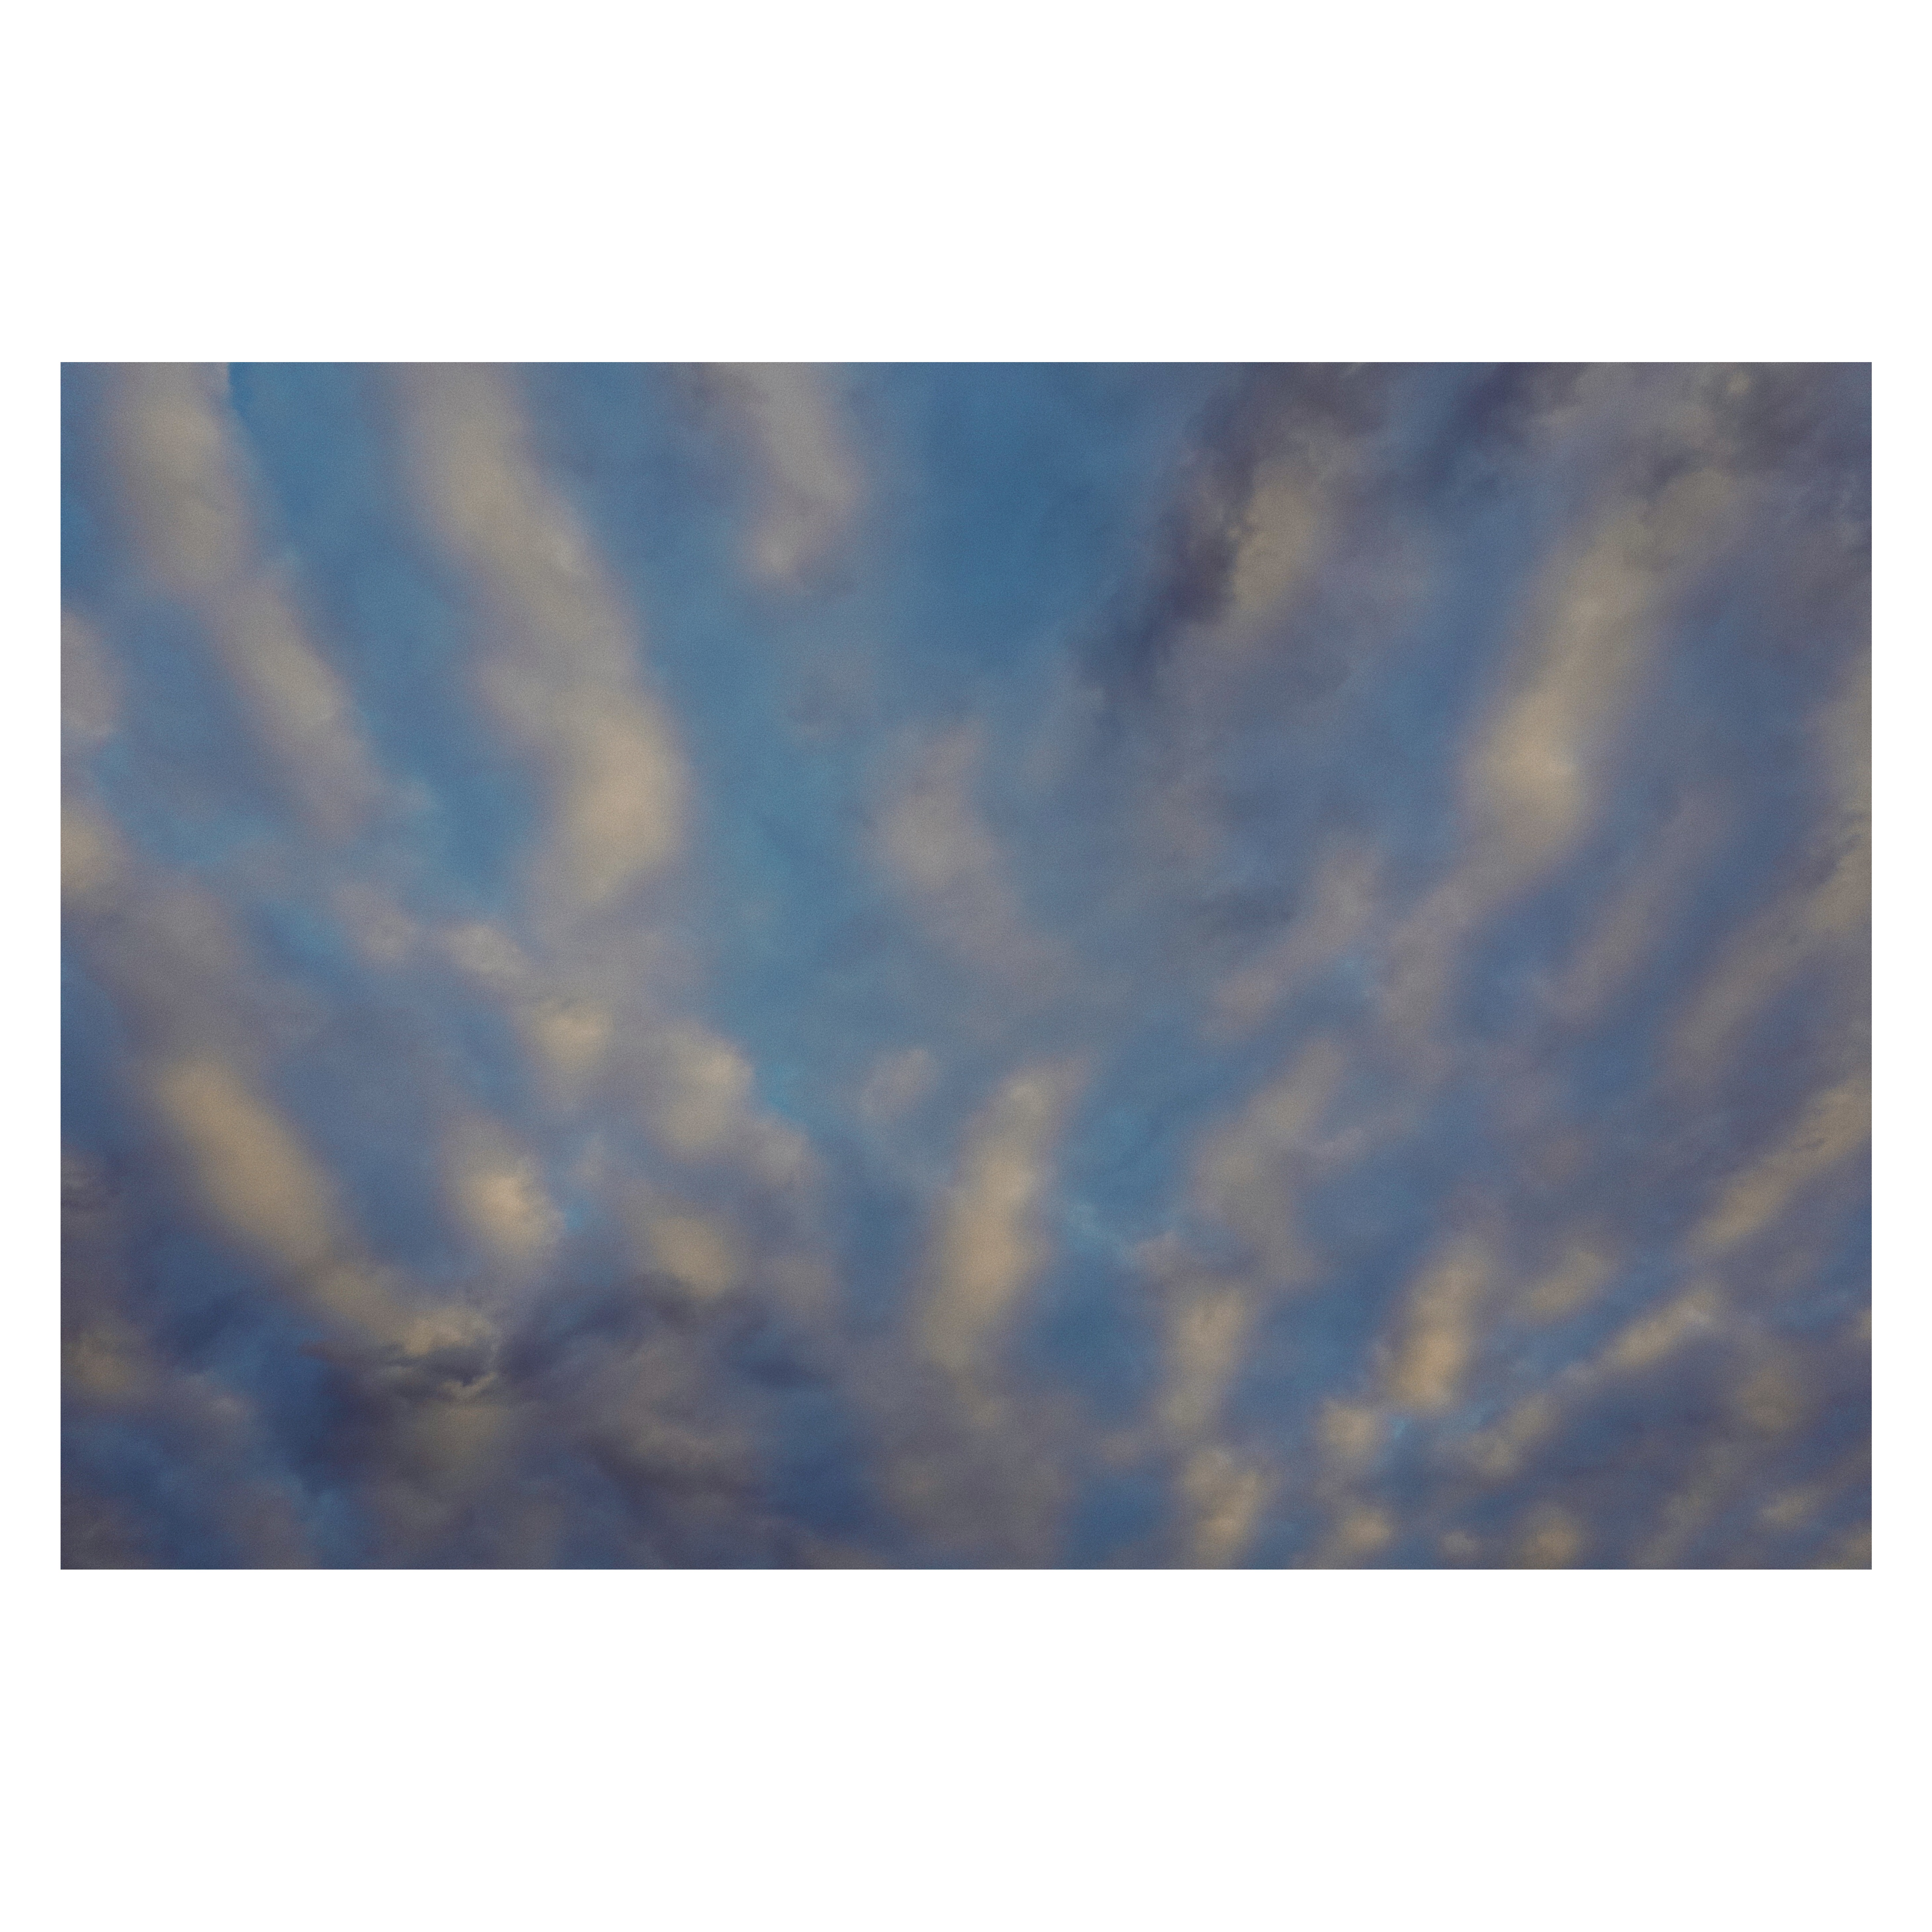 这个其实是W拍的水纹般的云啦,我也很喜欢,如果有胶卷的话可以弄个双重曝光,梦幻的感觉就更浓了